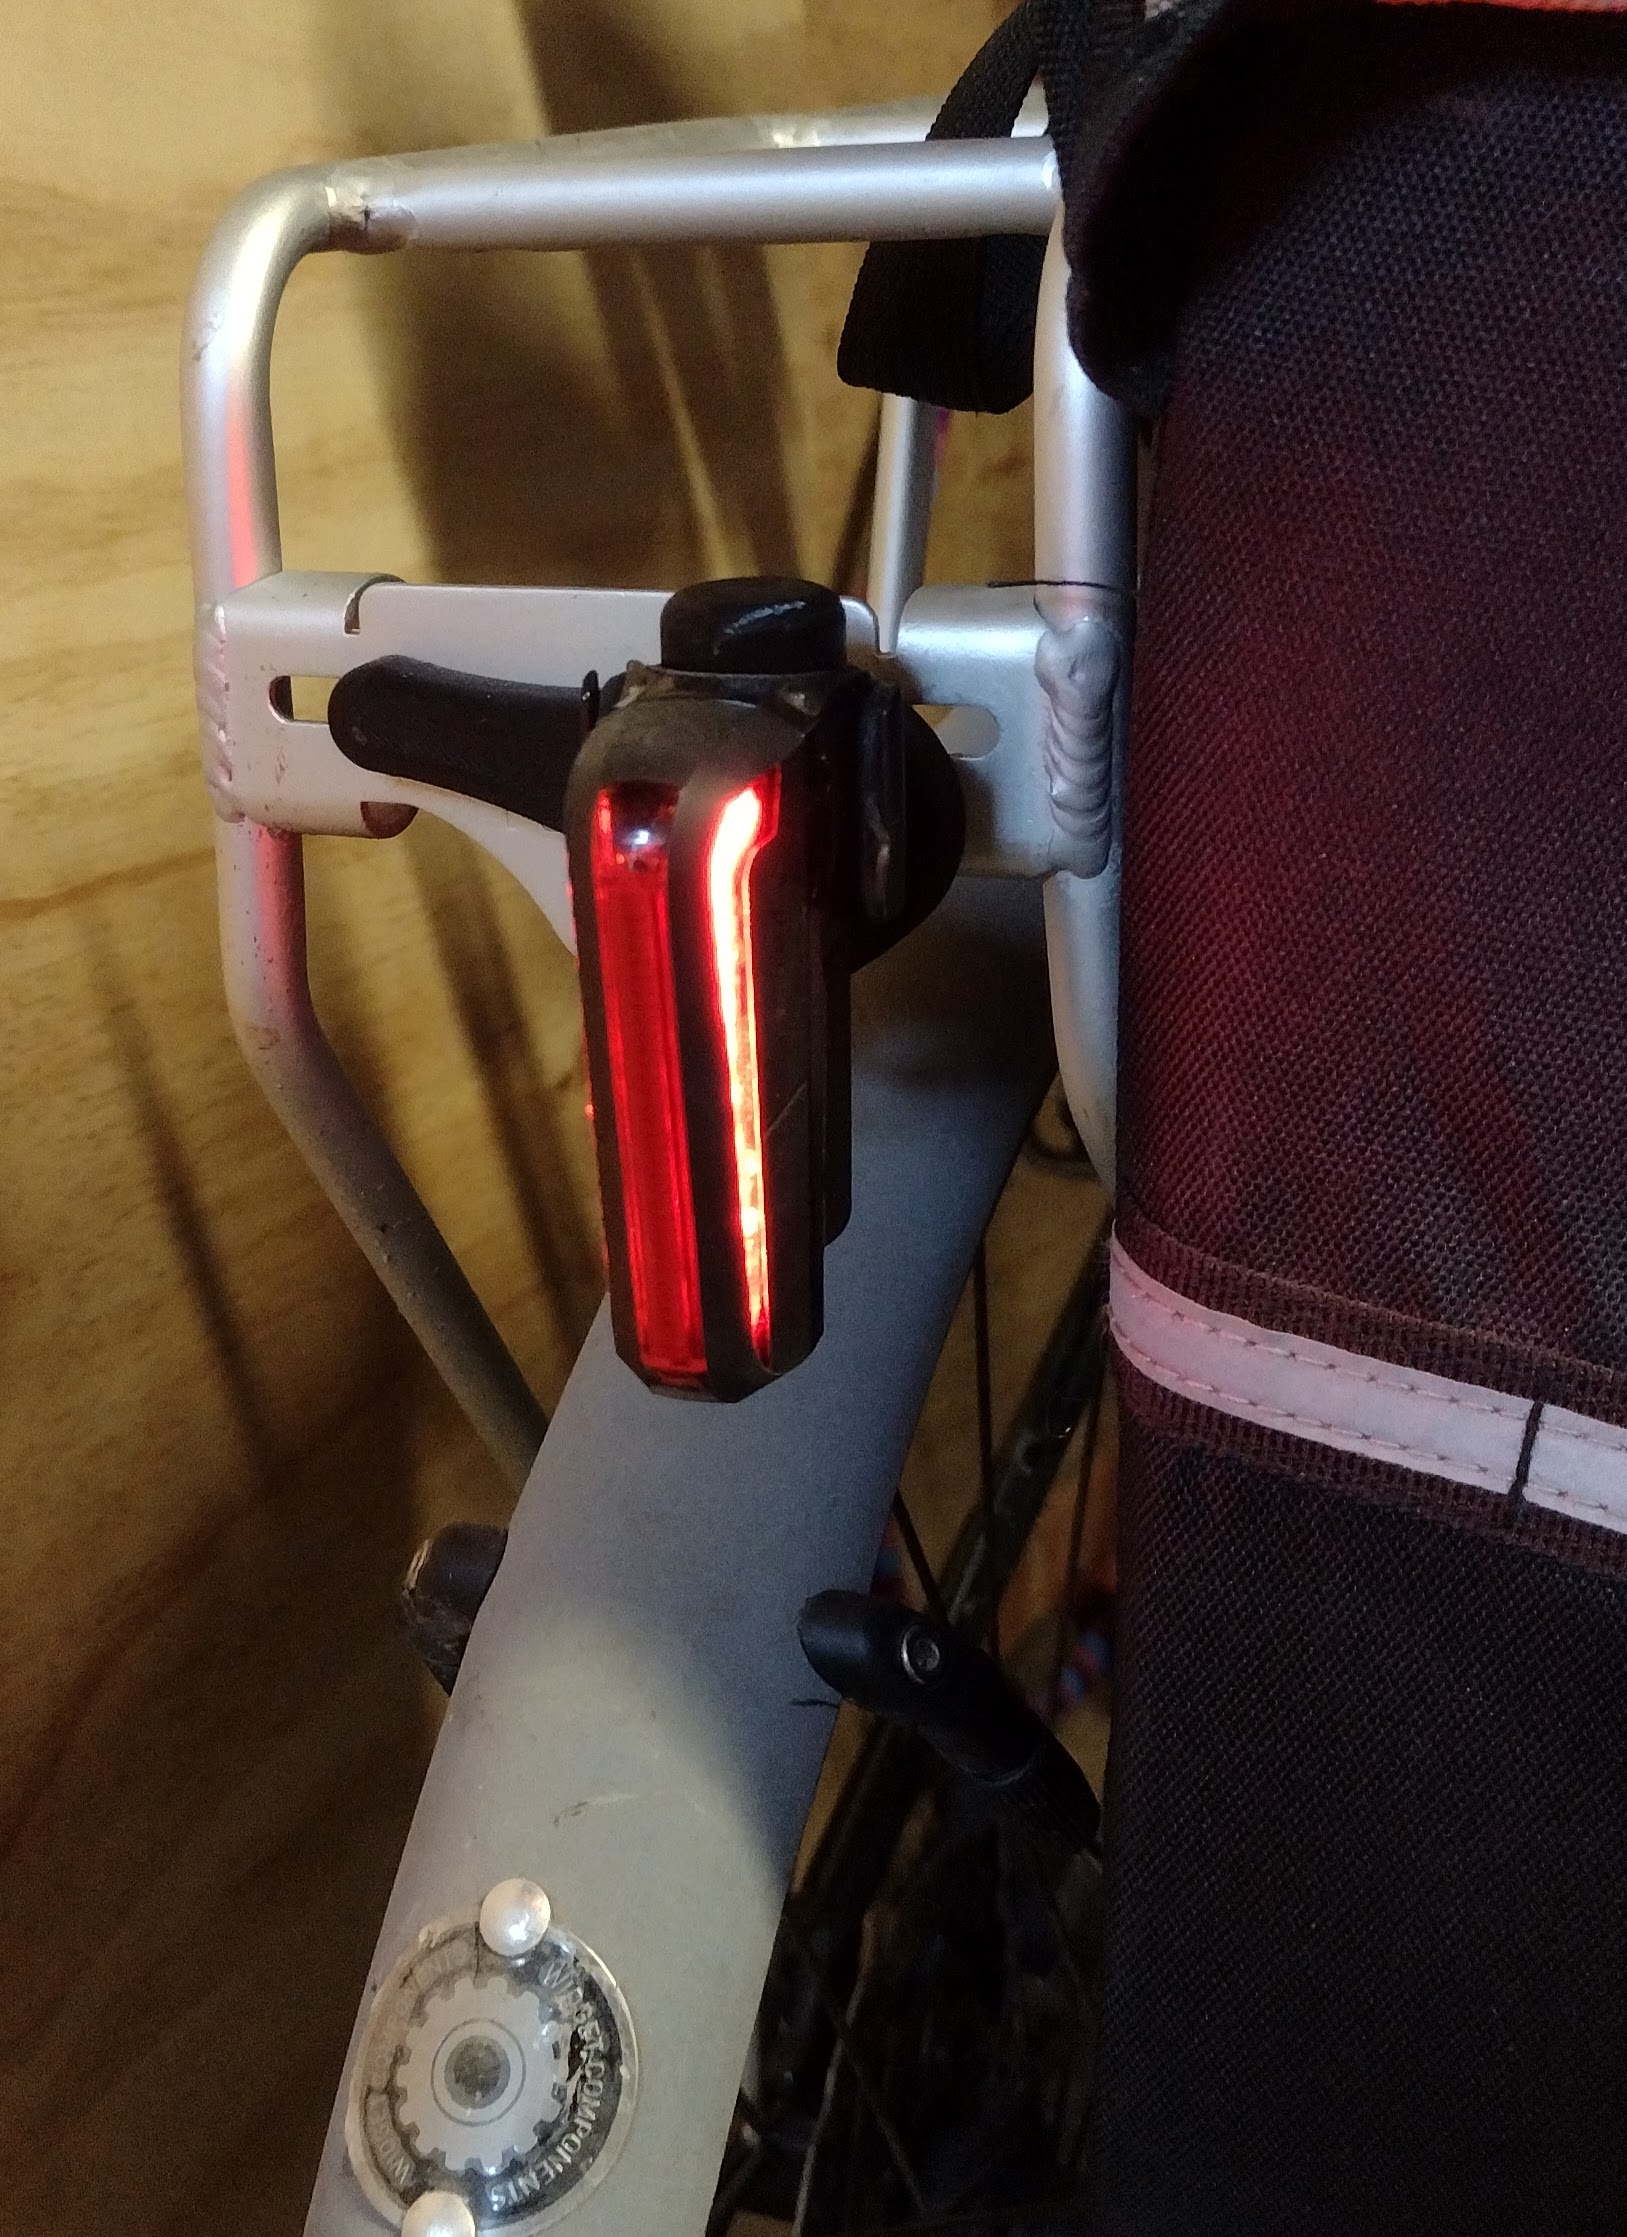 Bracket for Moon Cerberus rear LED light on pannier rack